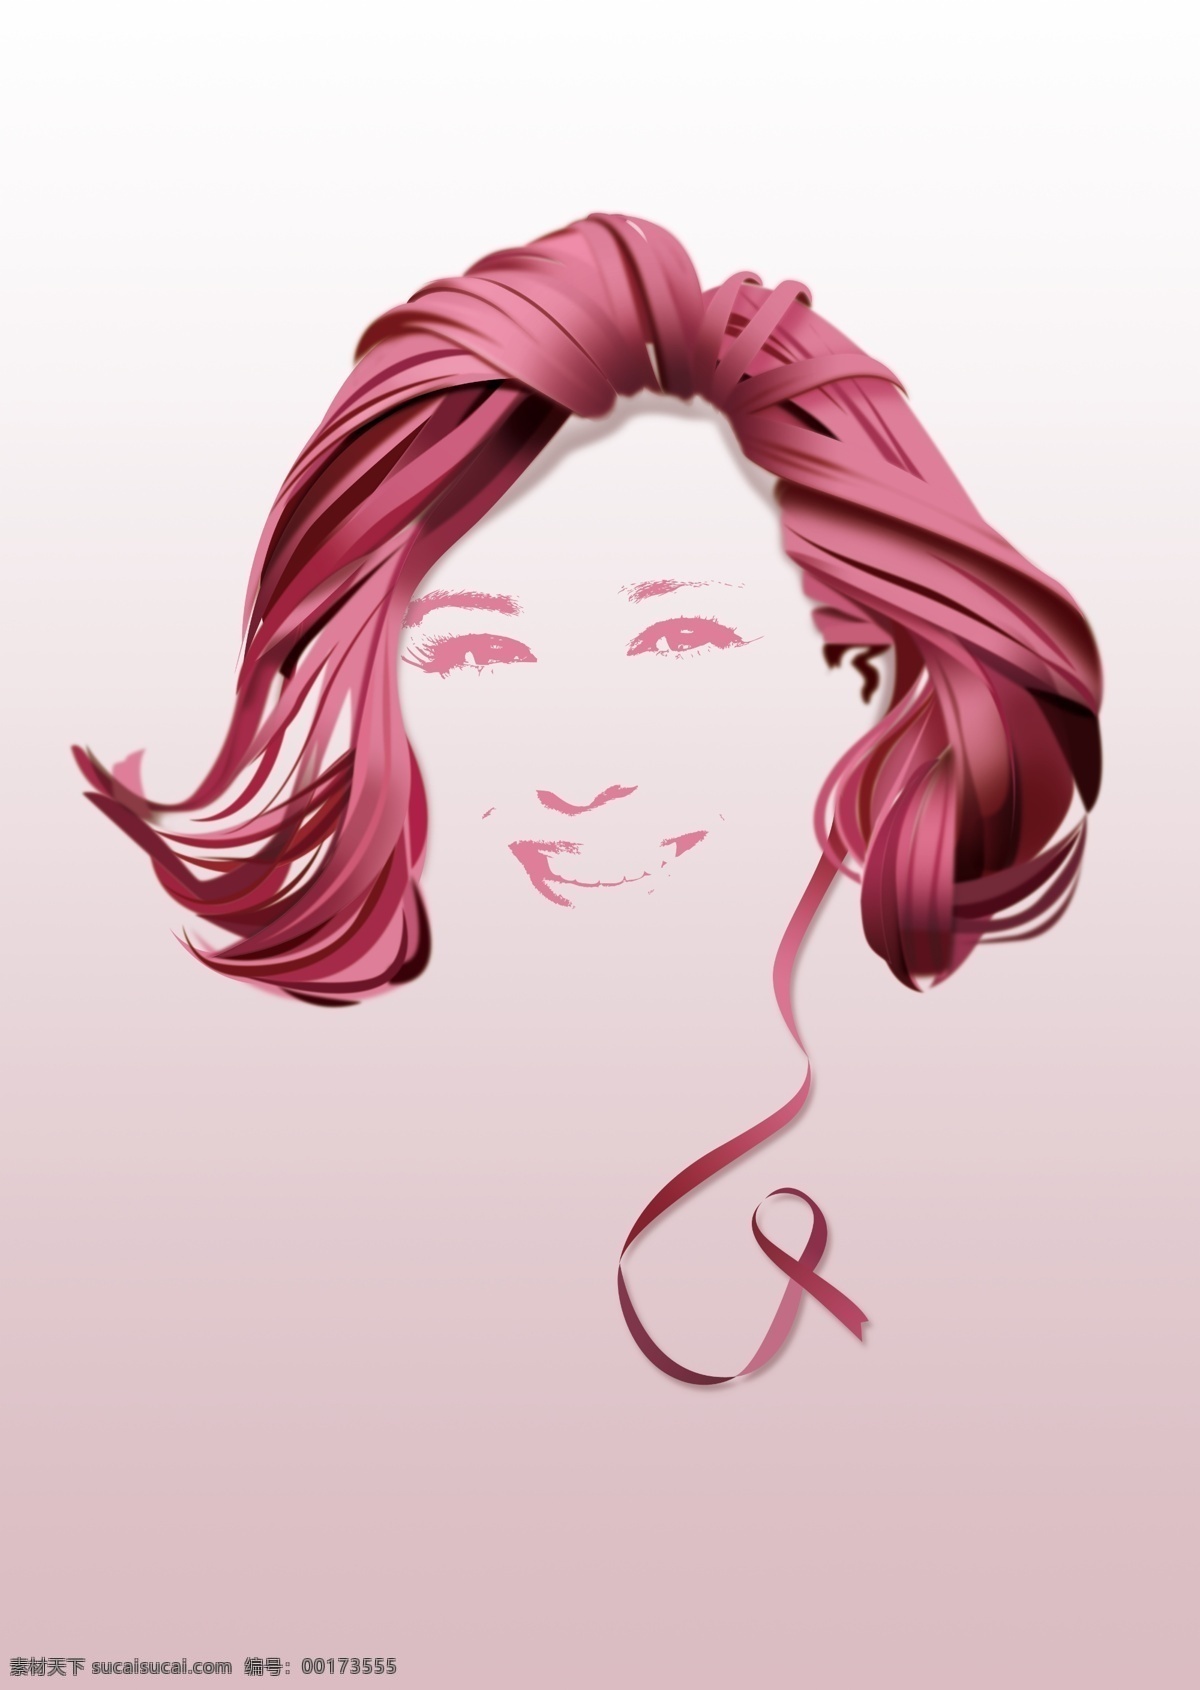 关爱乳腺癌 粉红丝带 乳腺癌 女 丝带 粉红 关爱 笑容 微笑 医学 鼓励 坚强 妇女 化疗 分层 人物